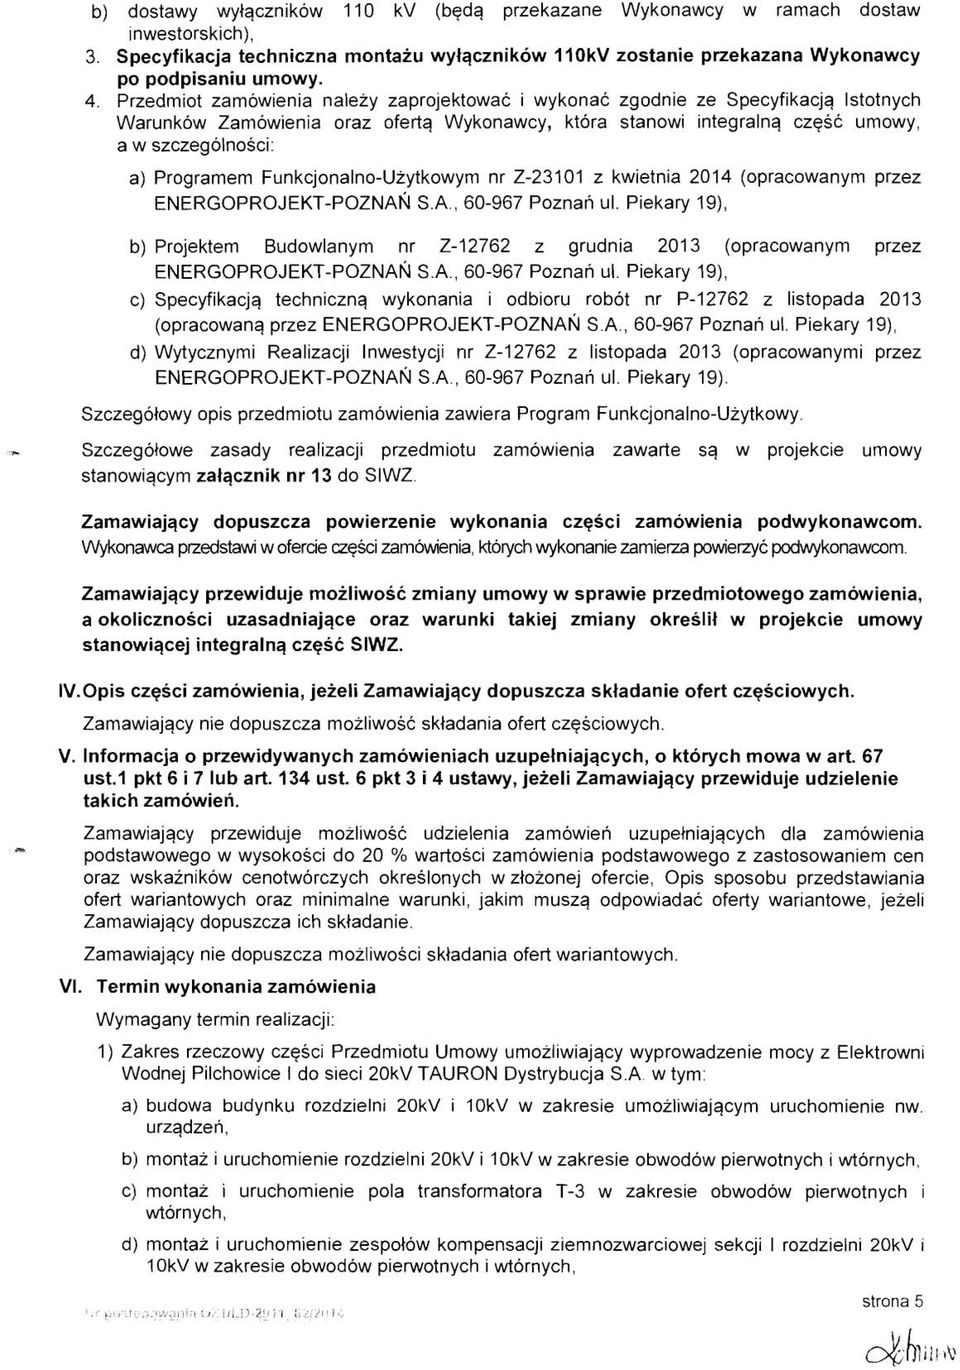 Funkcjonalno-Uzytkowym nr 2-23101 z kwietnia 2014 (opracowanym przez ENERGOPROJEKT-POZNAN S.A., 60-967 Poznan ul.